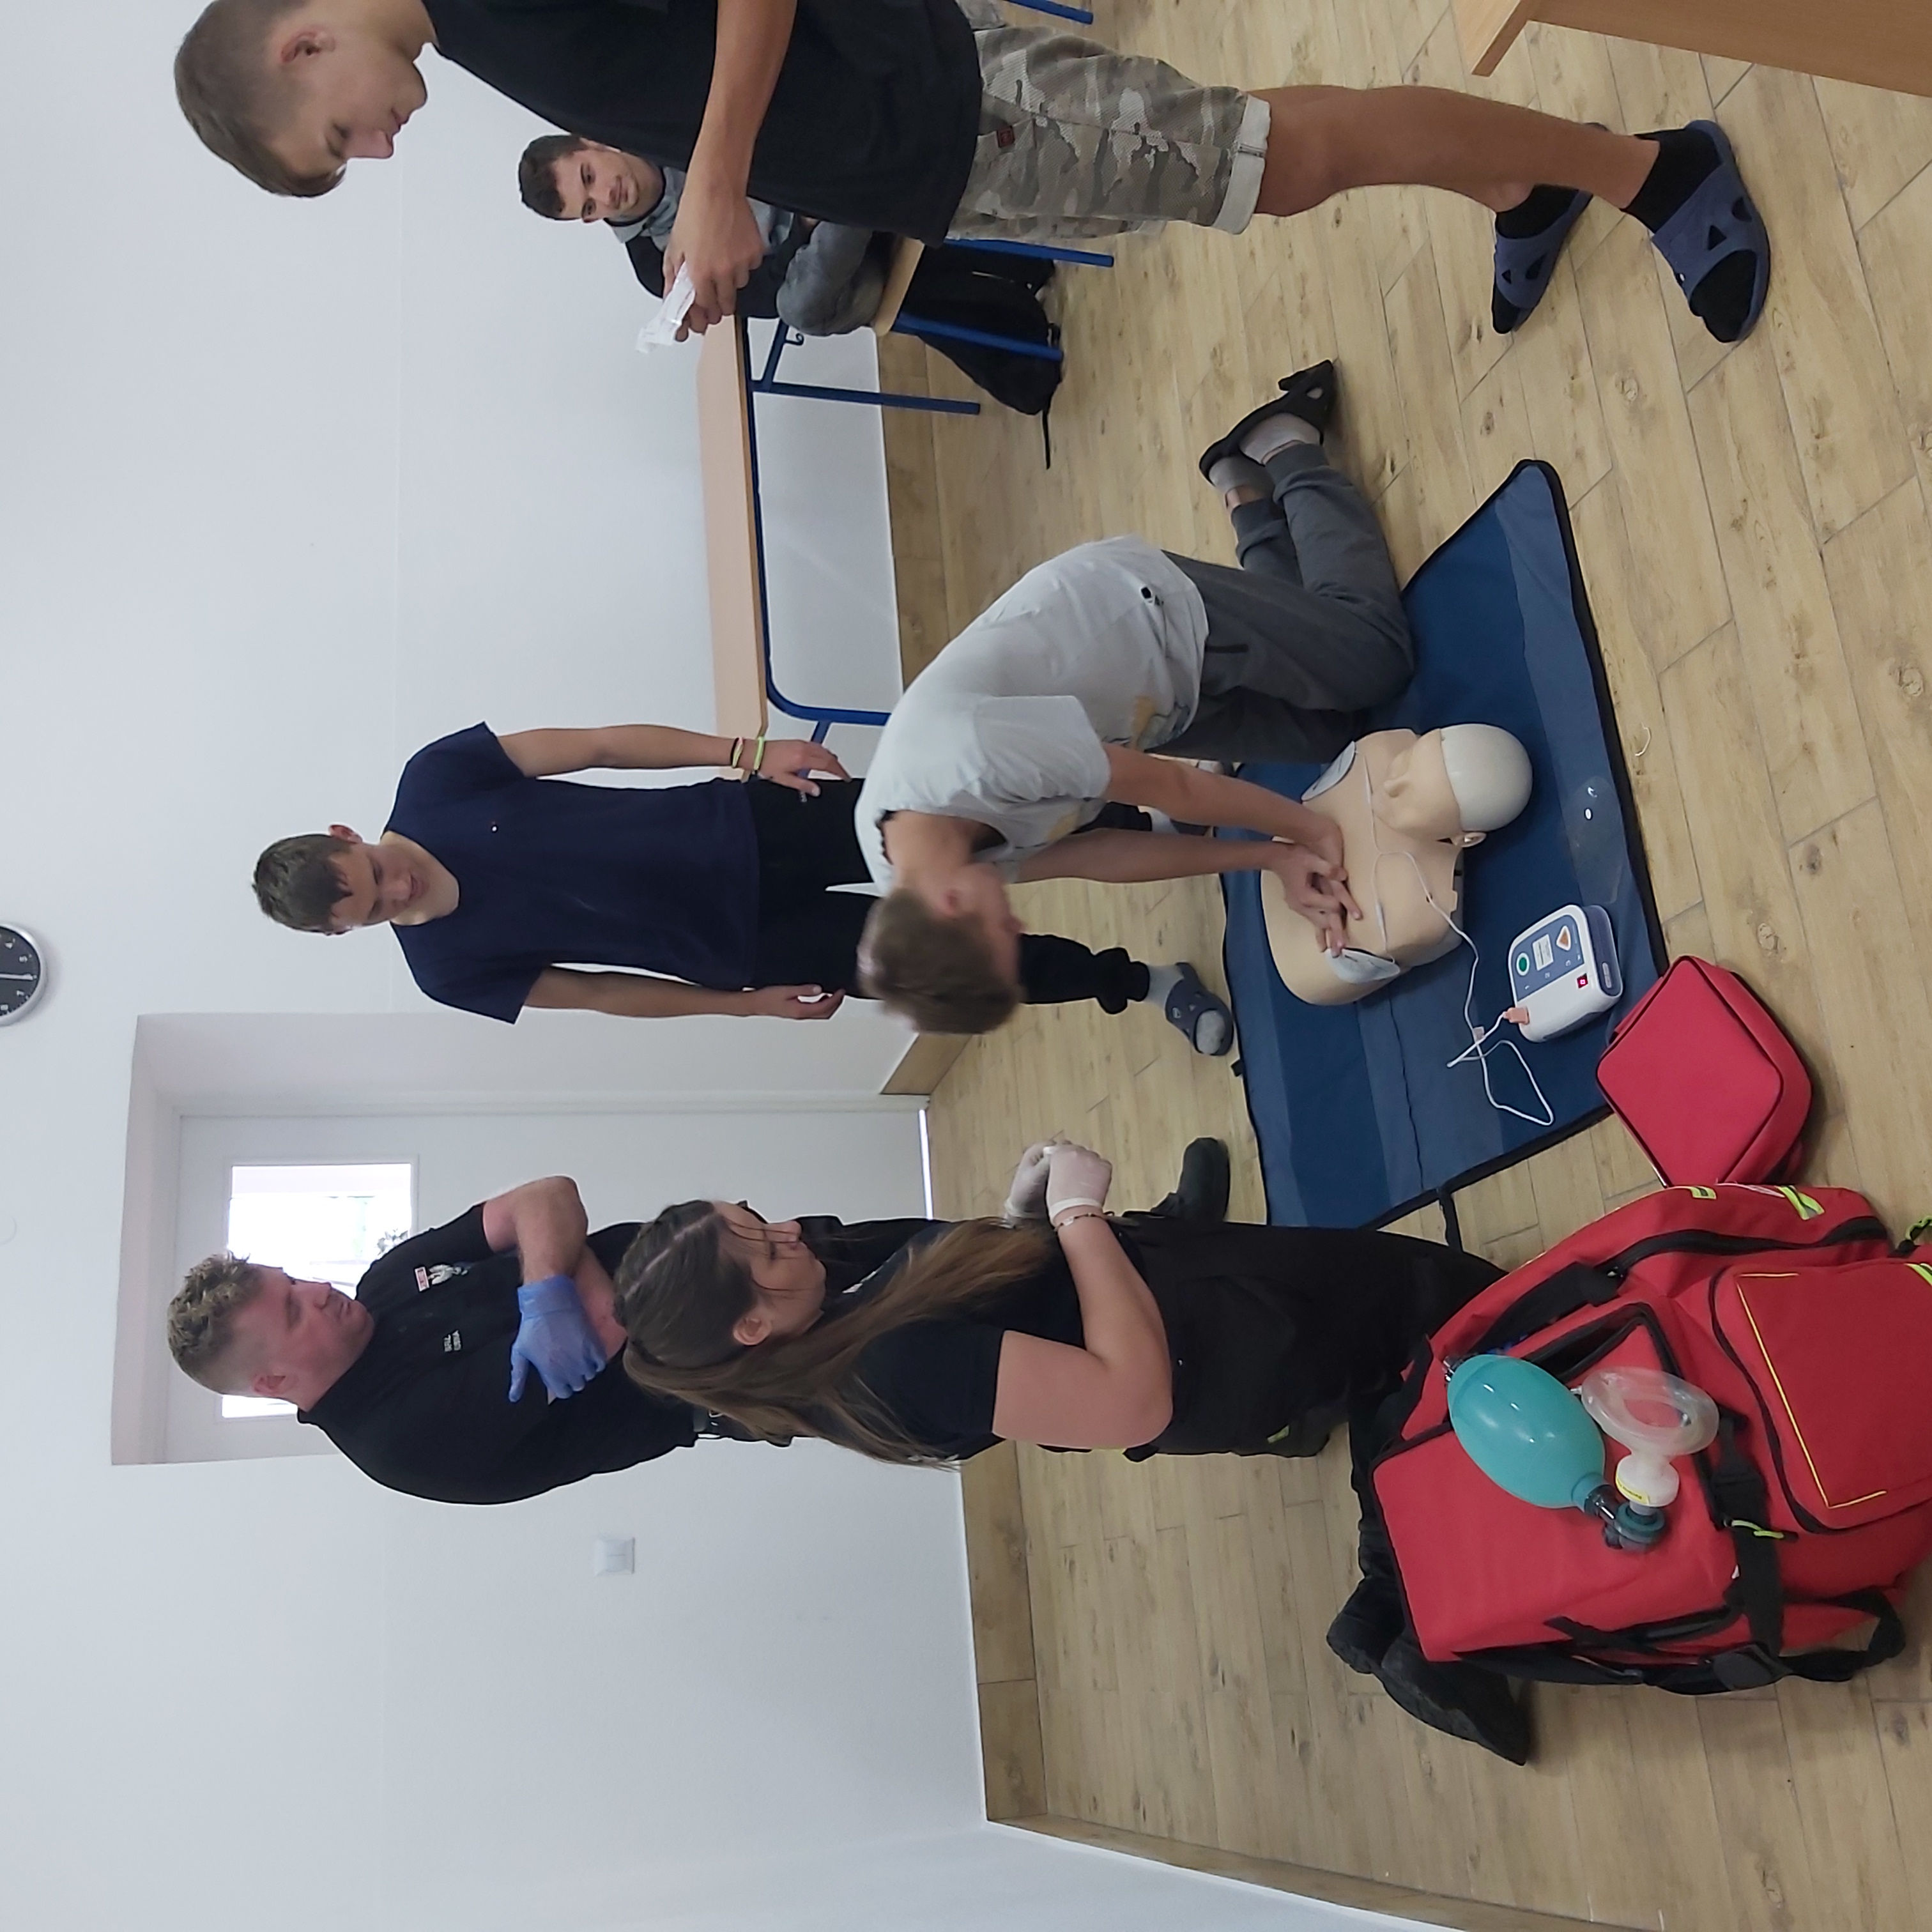 Warsztaty z pomocy przedmedycznej | Wychowanek MOW ćwiczy na manekinie masaż serca, obok stoją przypatrujący się wychowankowie oraz Druhowie sprawdzający poprawność wykonania masażu..jpg